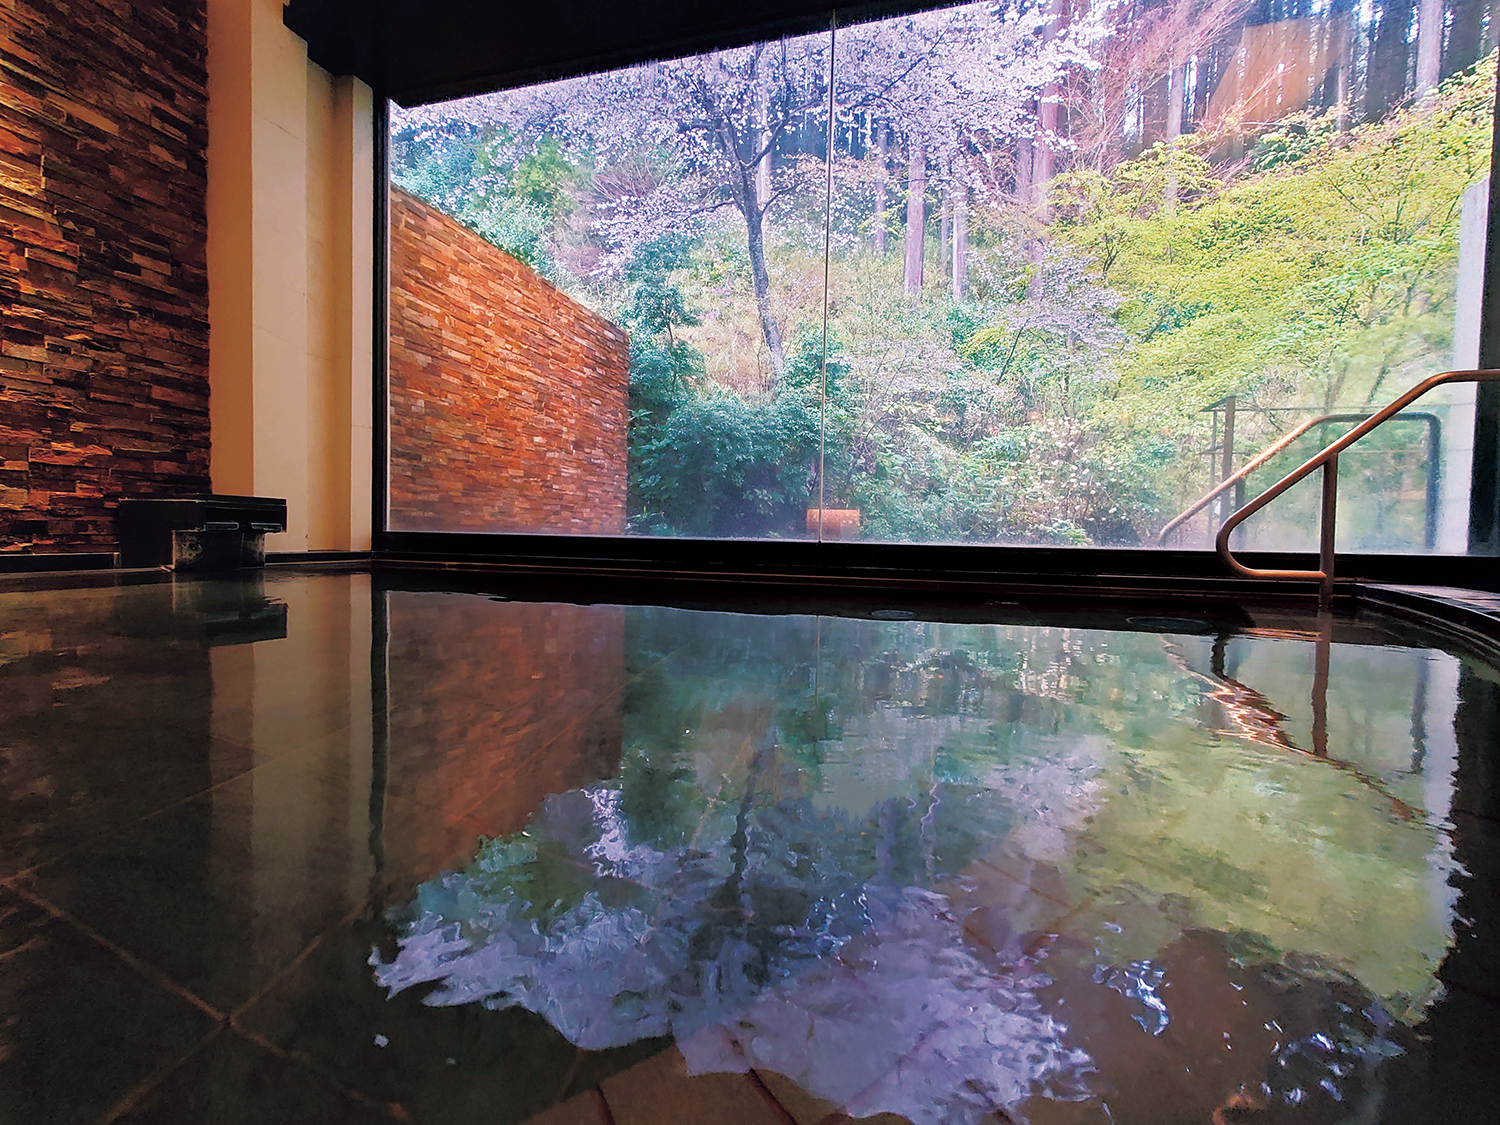 芦ノ湖温泉『山のホテル』では露天風呂に覆いかぶさるように桜が咲く。芦ノ湖を望める庭にも桜が点在。